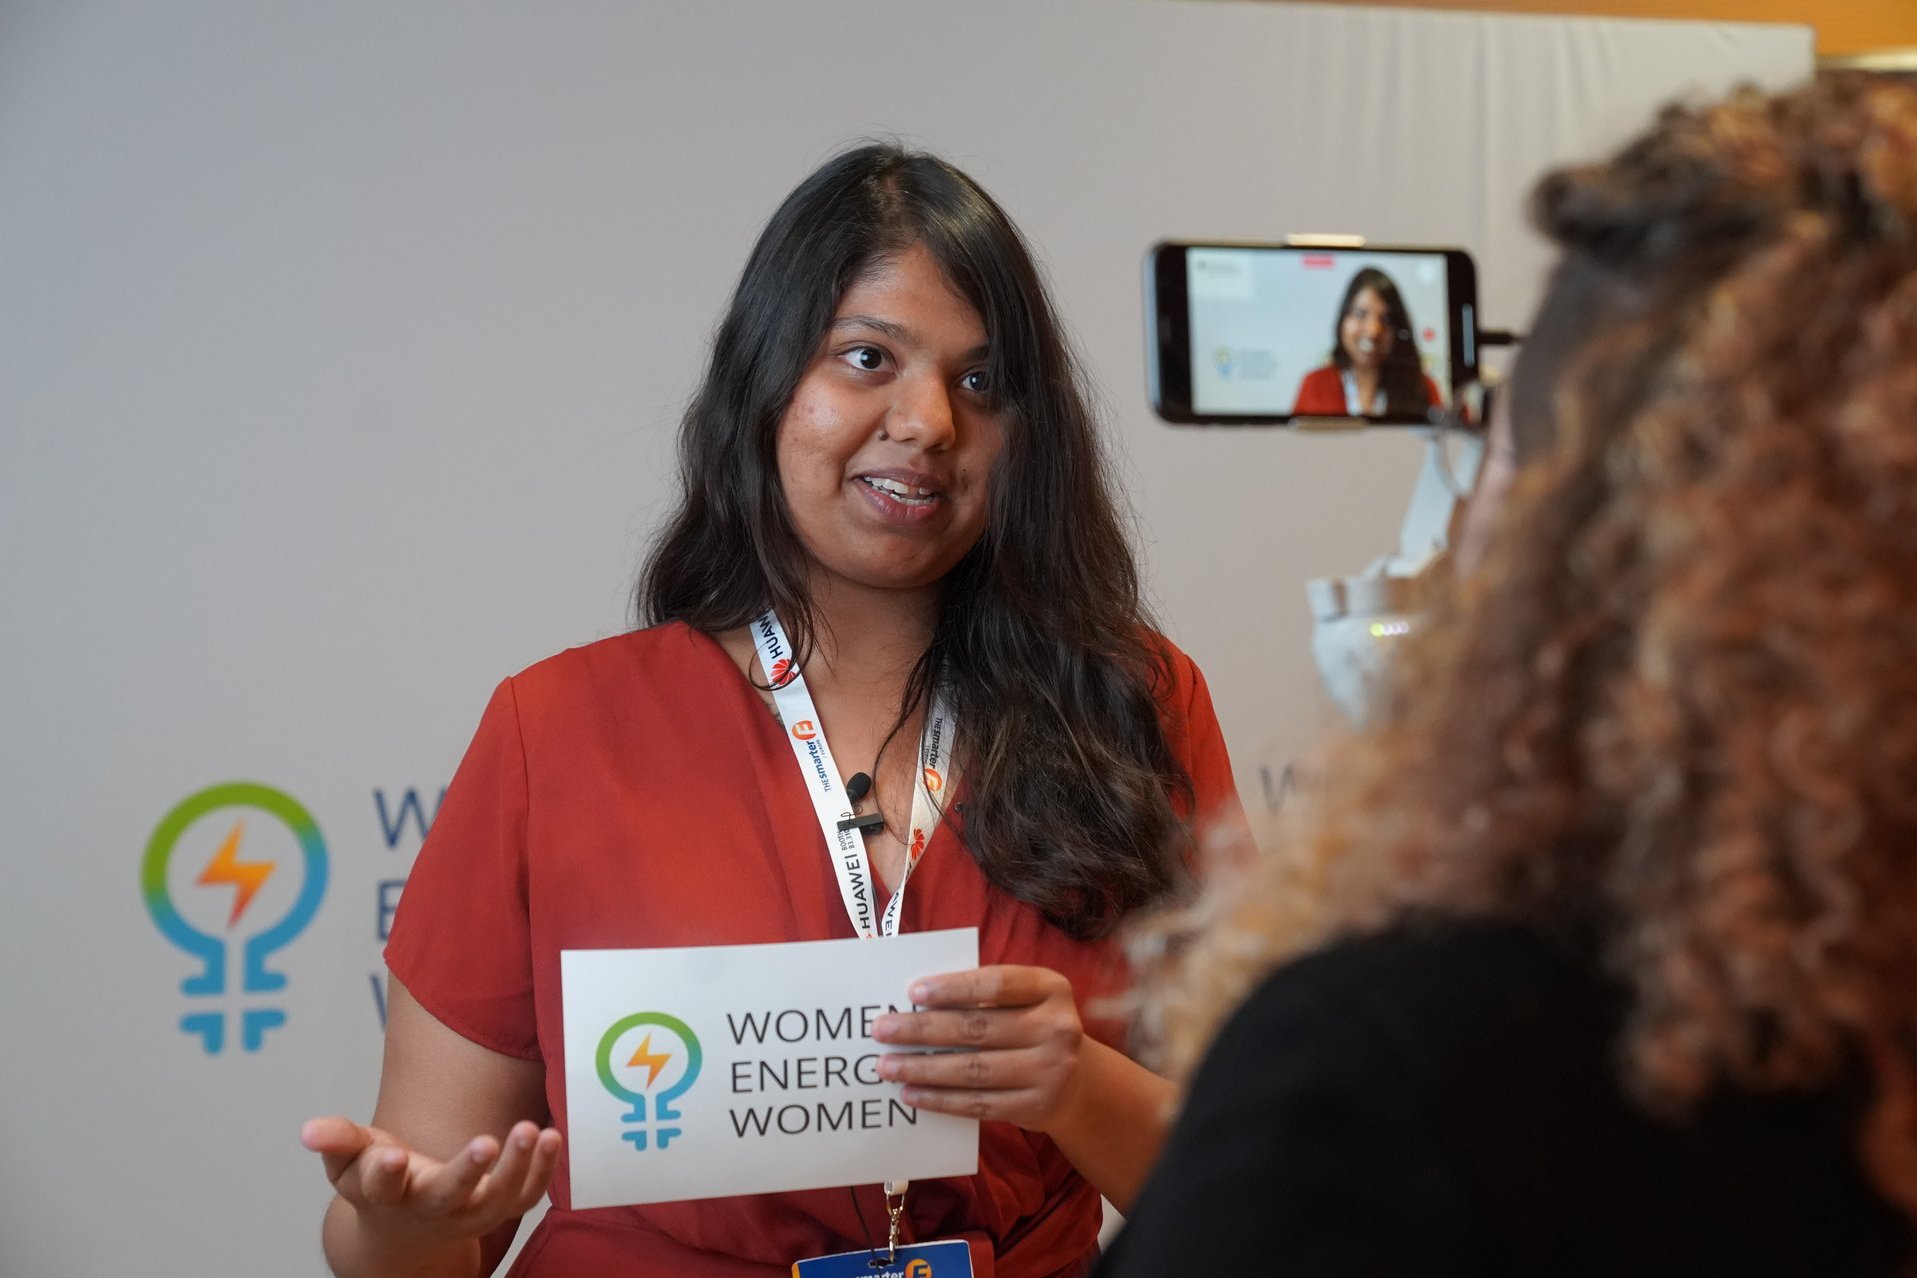 Frau hält ein Women Energize Women Schild in der Hand und wird gefilmt